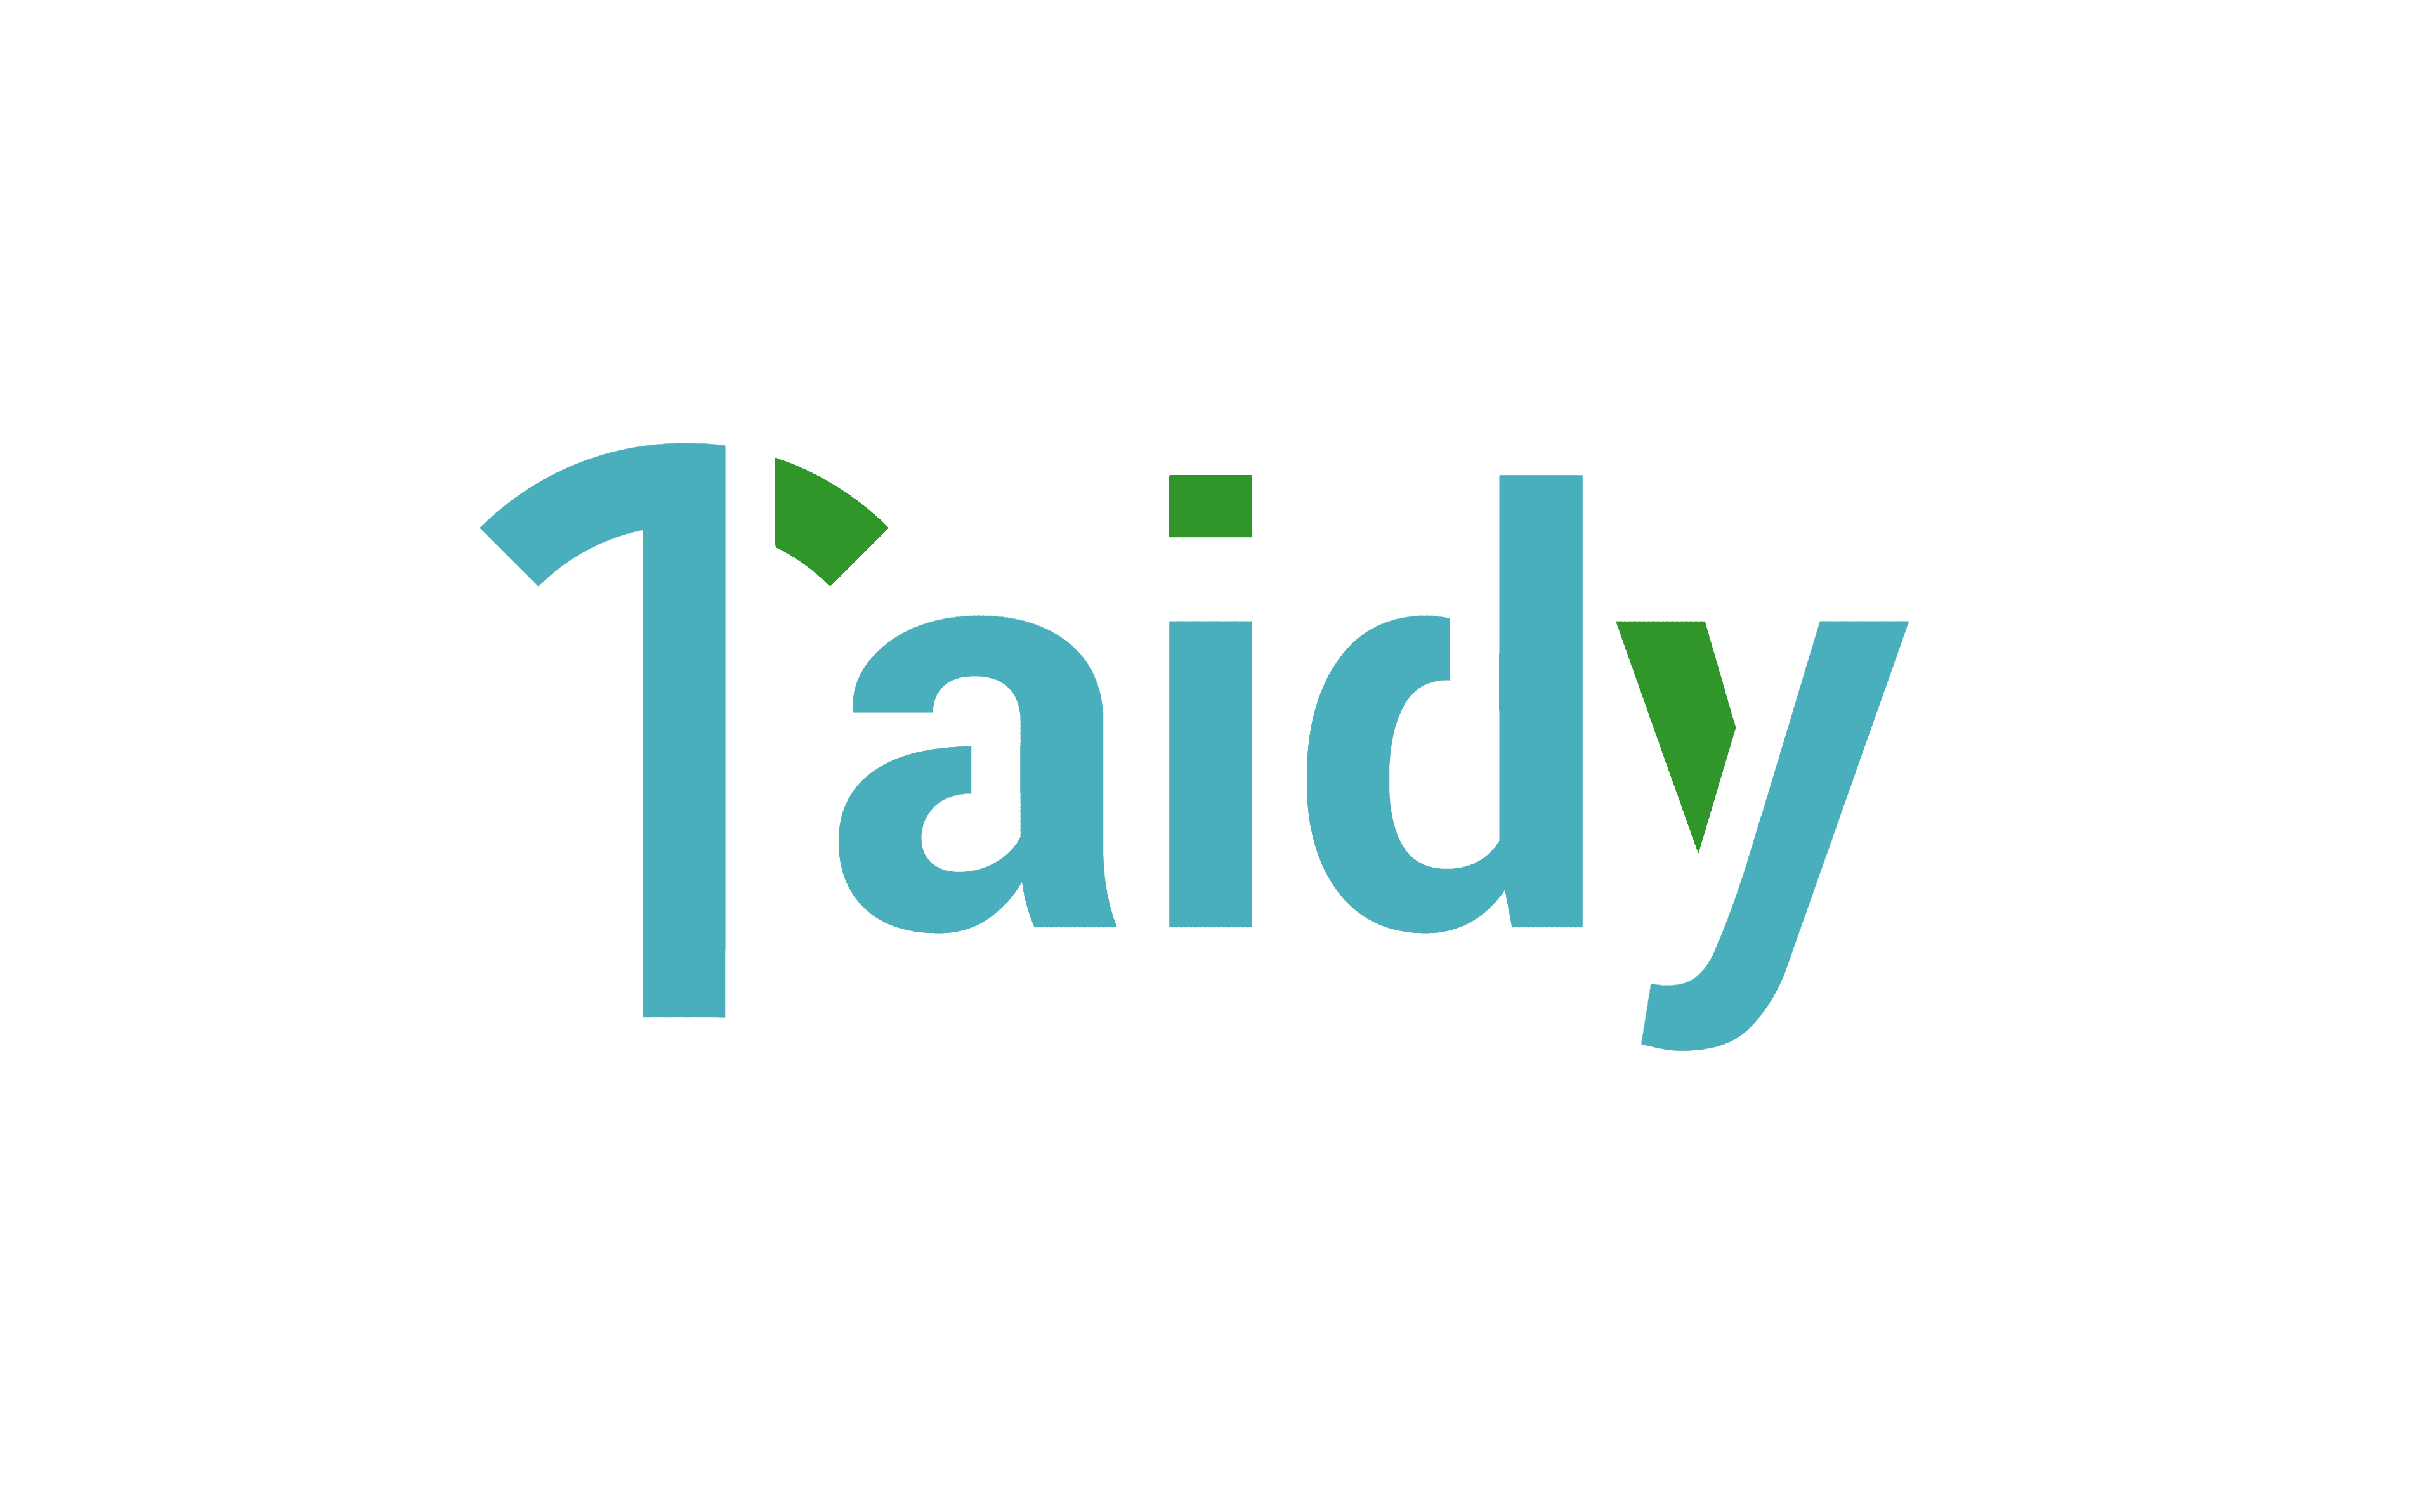 Product Taidy - Soluciones End-to-End basadas en datos image